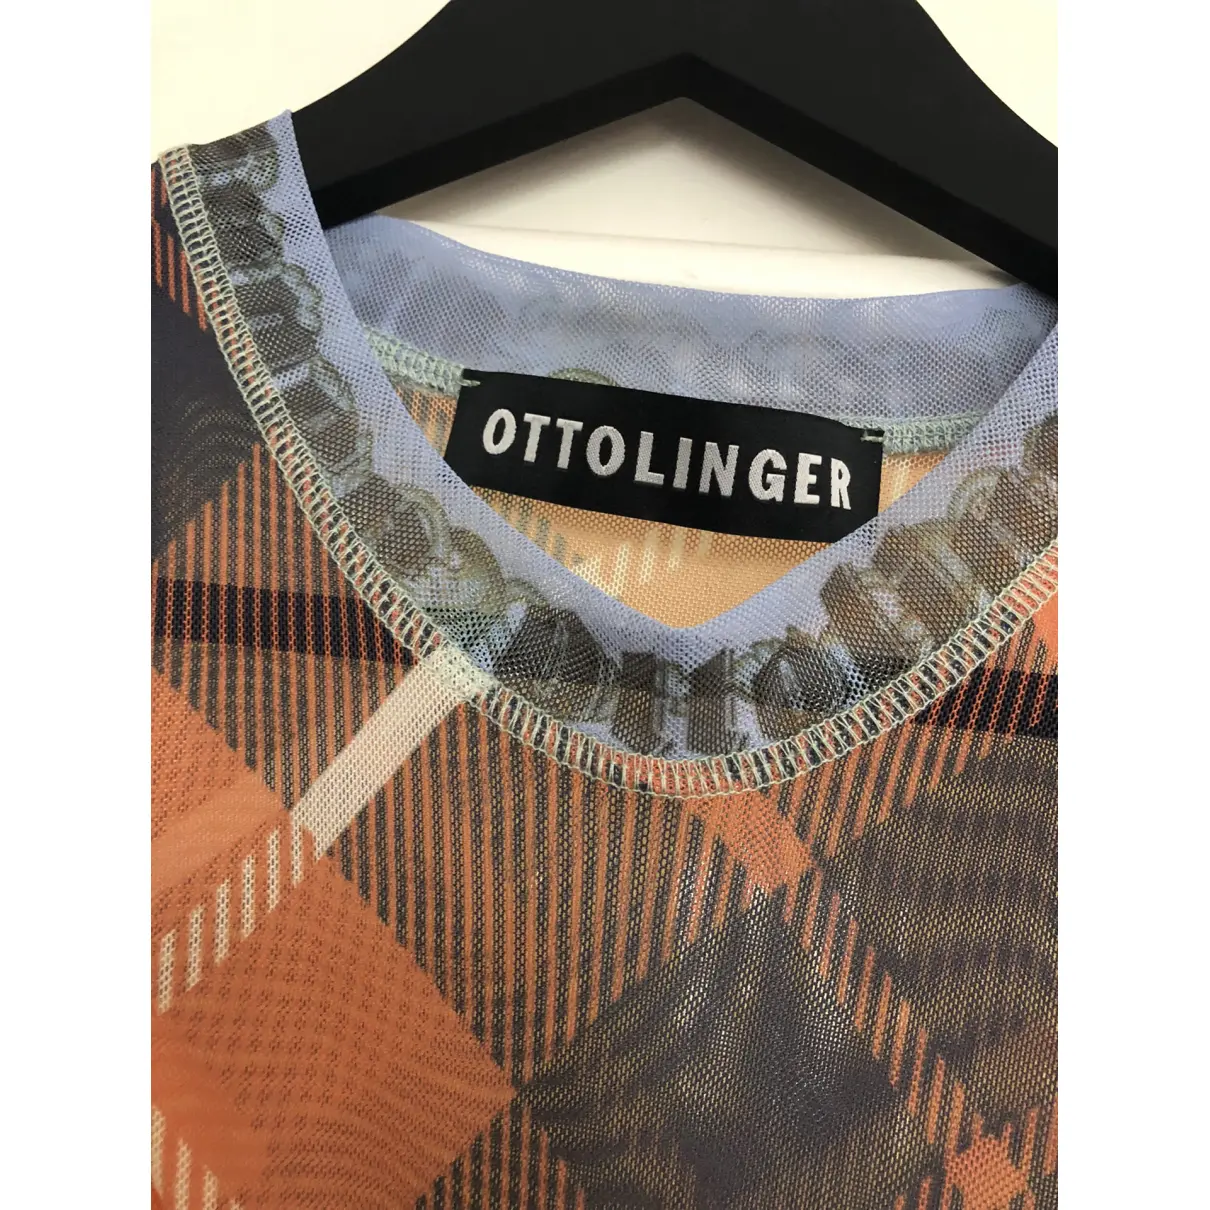 Buy Ottolinger T-shirt online